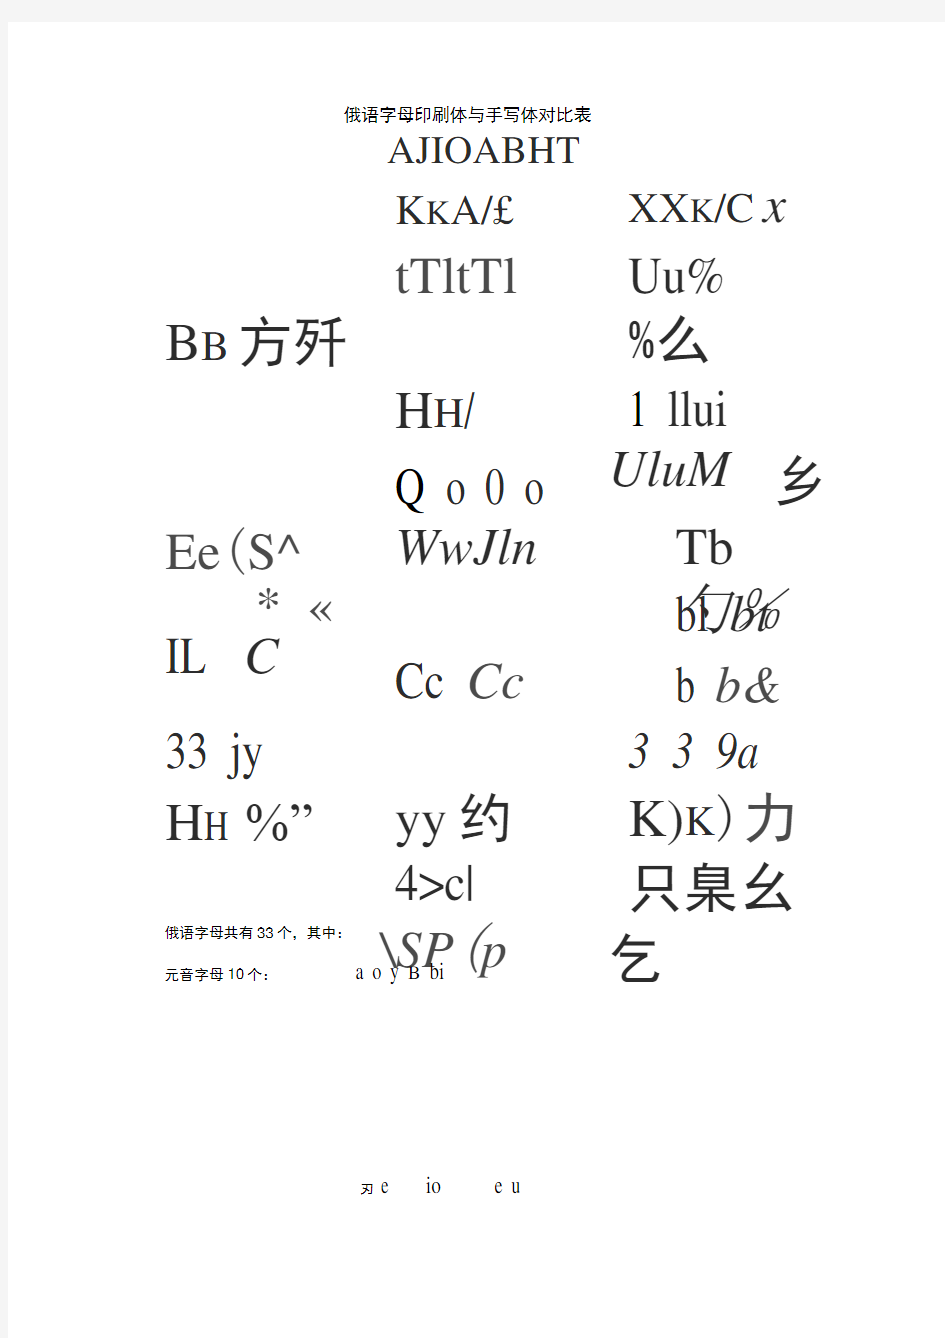 俄语字母表(印刷体与手写体对照)